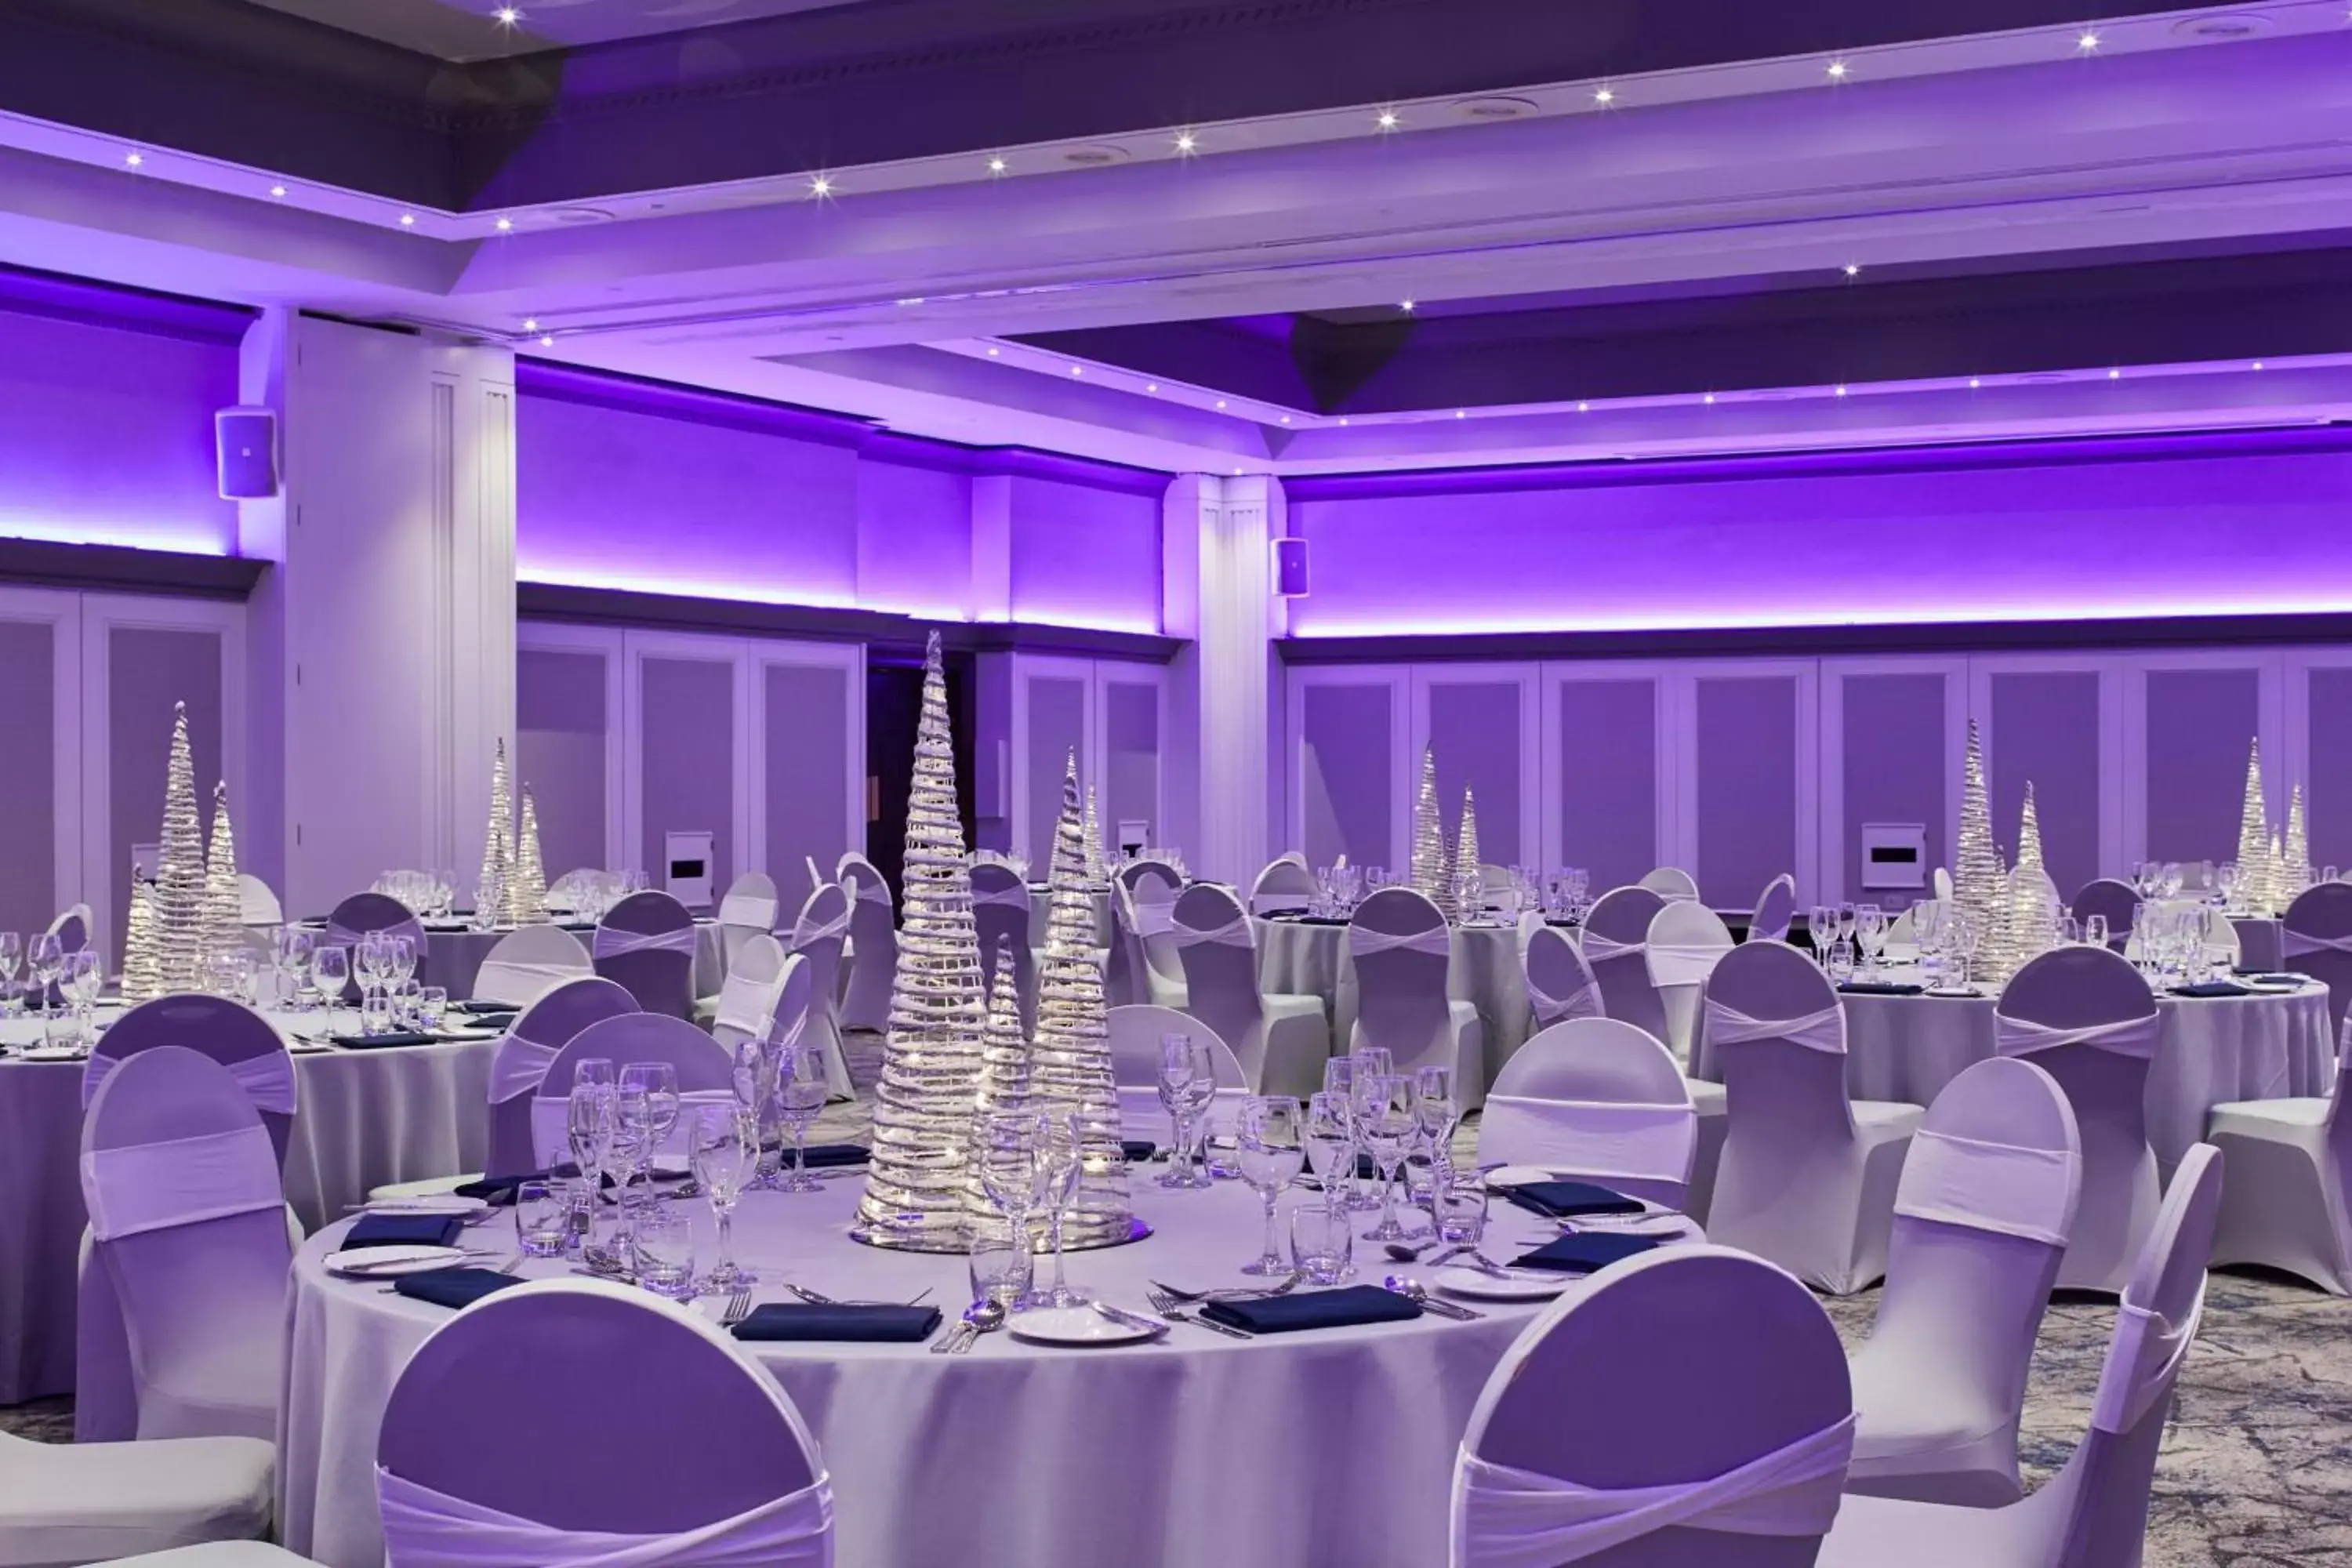 Meeting/conference room, Banquet Facilities in Leeds Marriott Hotel